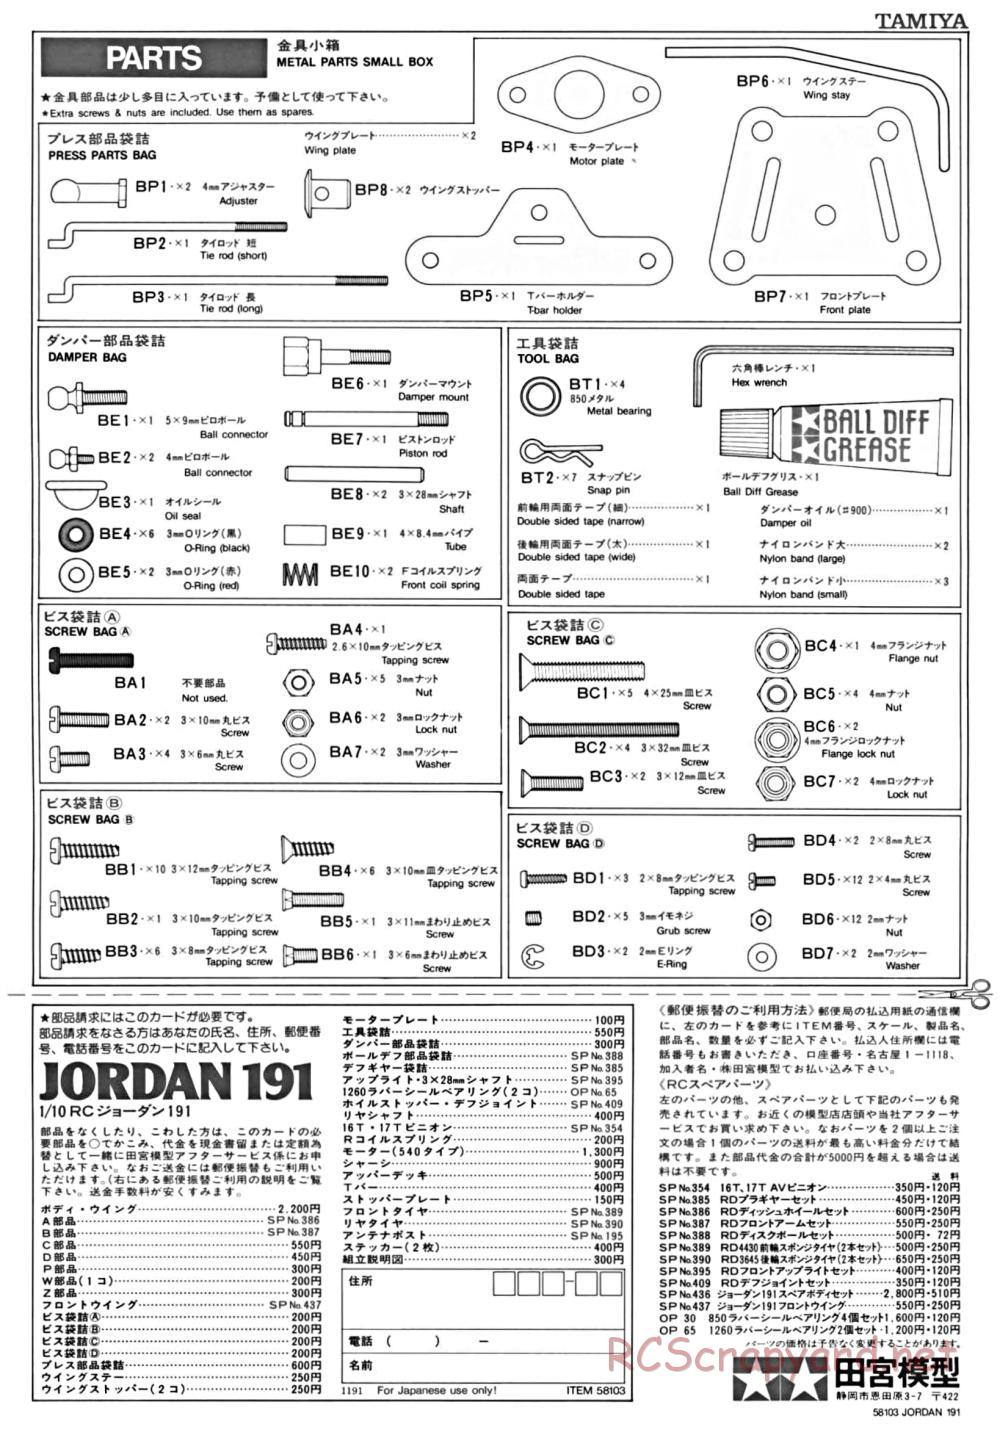 Tamiya - Jordan 191 - 58103 - Manual - Page 18